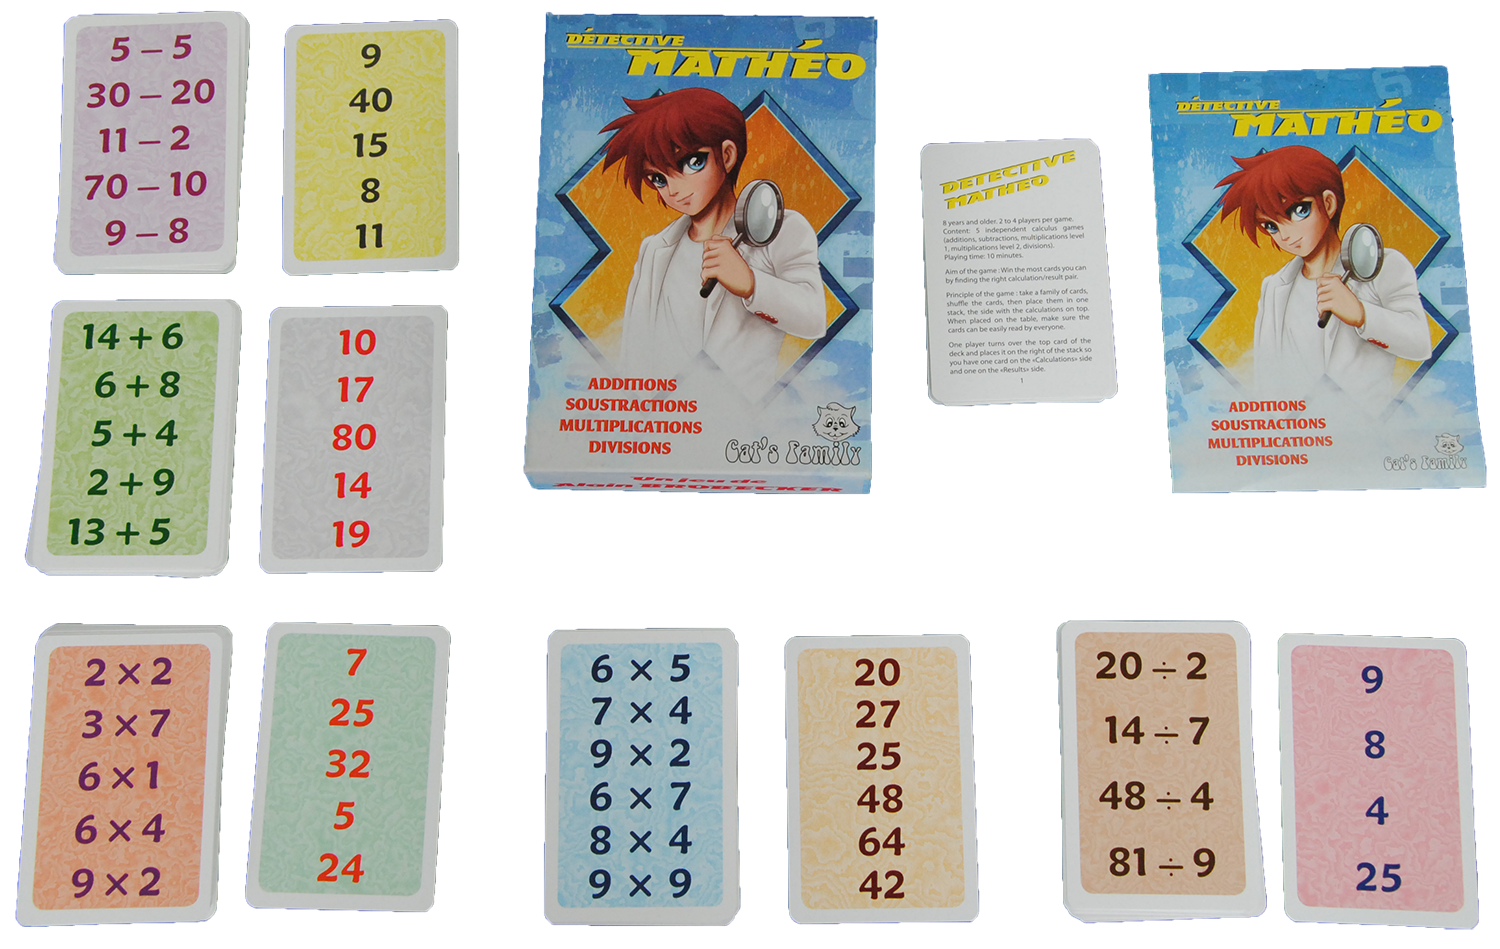 Contenu du jeu Détective Mathéo de Cat's Family, pour apprendre et maitriser les fractions et leurs représentations